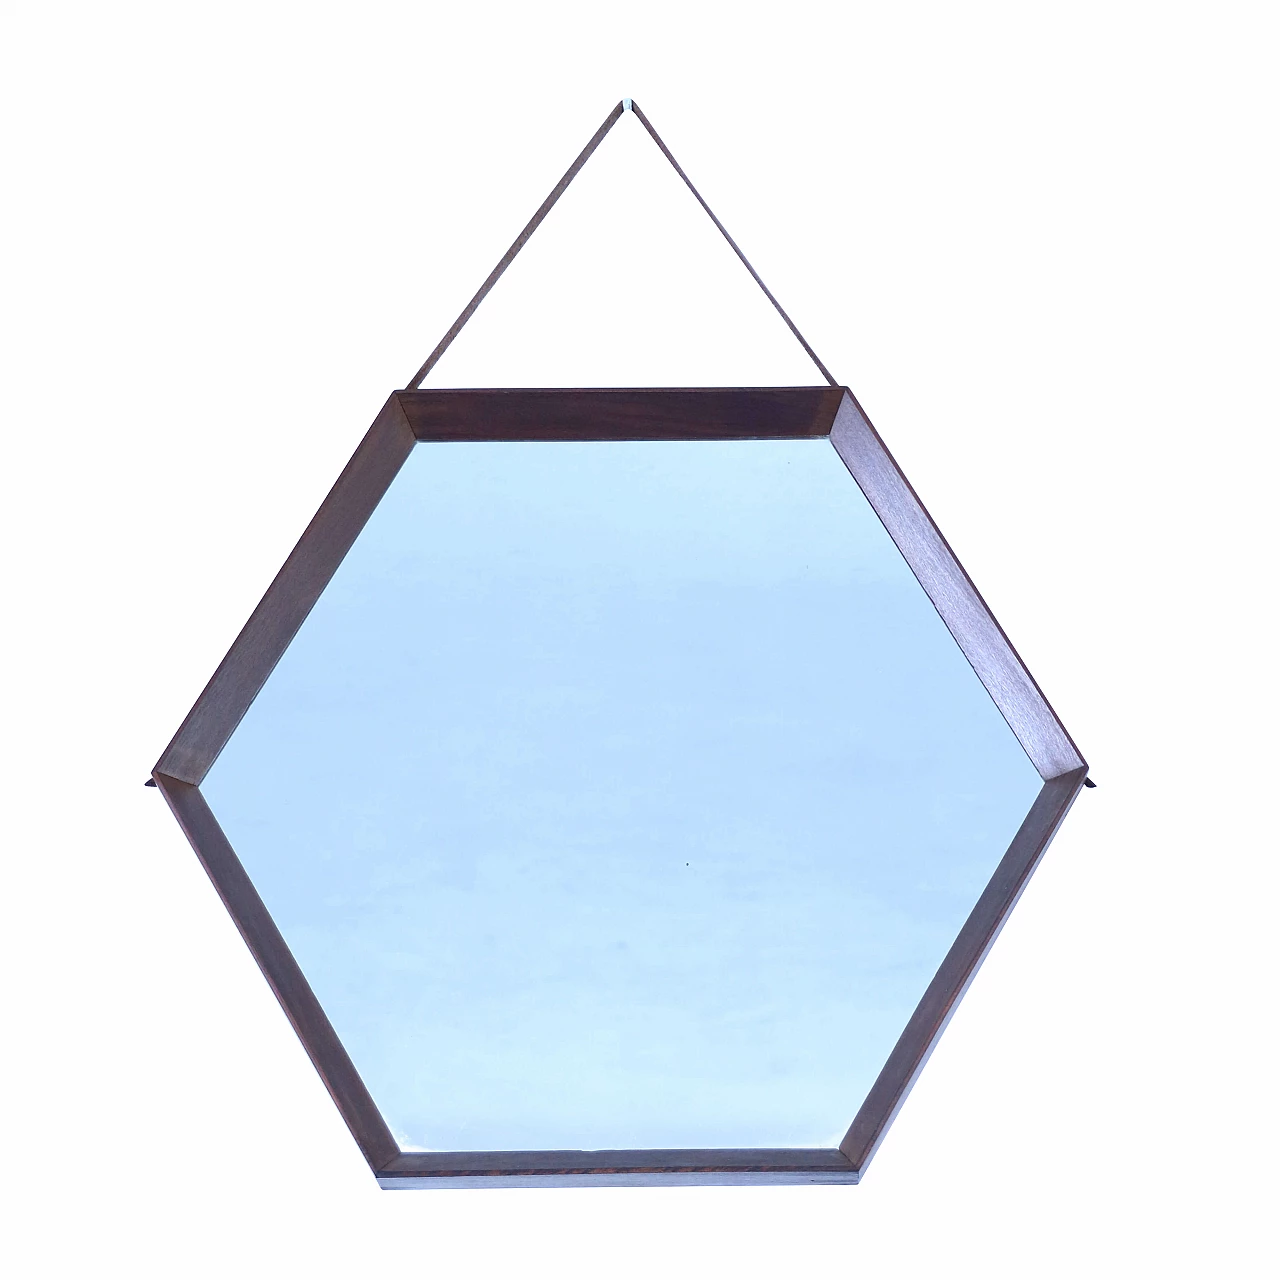 Hexagonal teak mirror 1144112